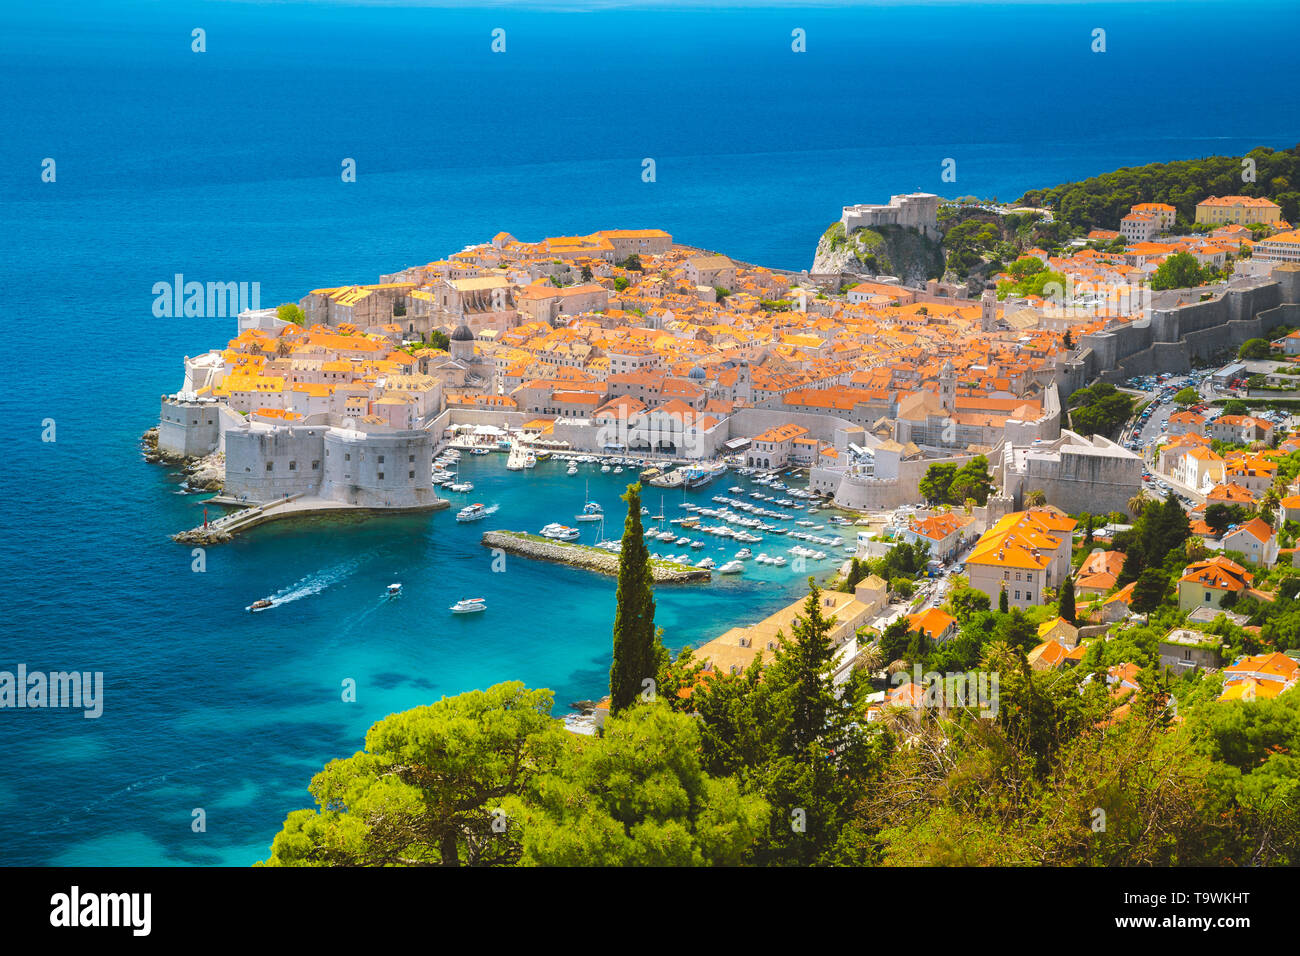 Vue panoramique vue aérienne de la ville historique de Dubrovnik, l'une des plus célèbres destinations touristiques de la mer Méditerranée, à partir de la montagne sur une SRT Banque D'Images